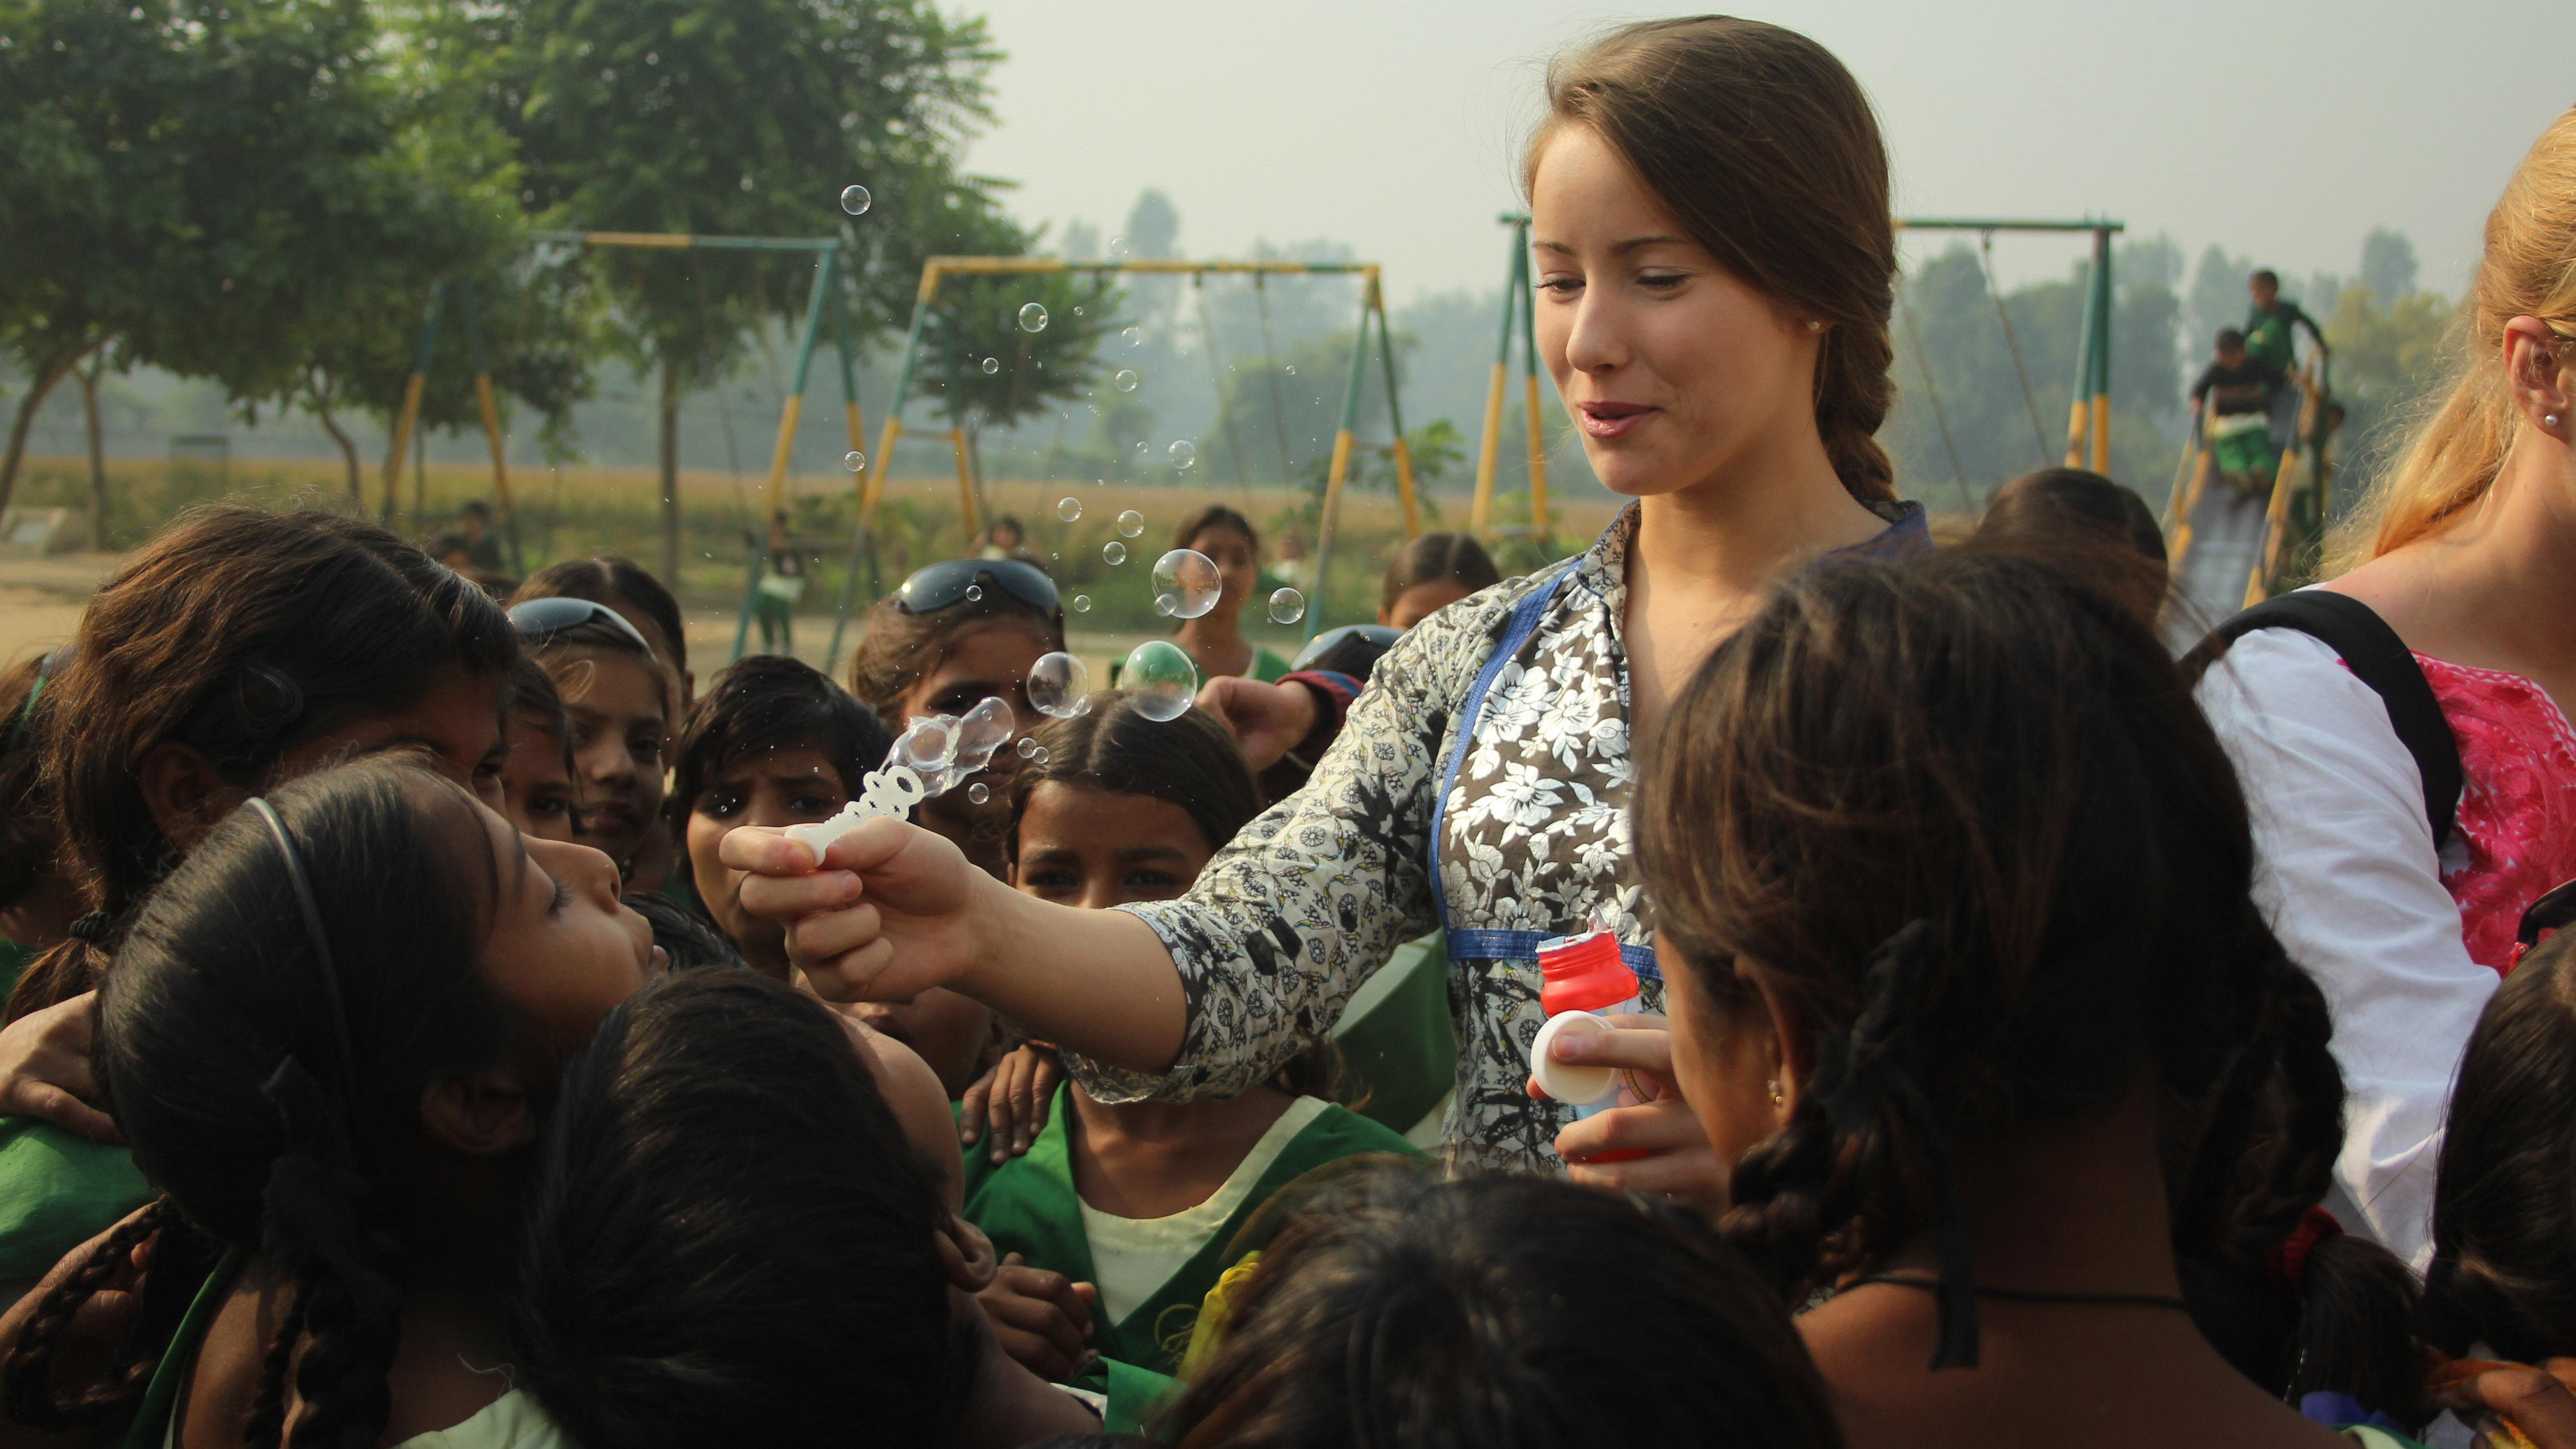 Indin 12yeers X Video - Indian girls' school empowers society's weakest members